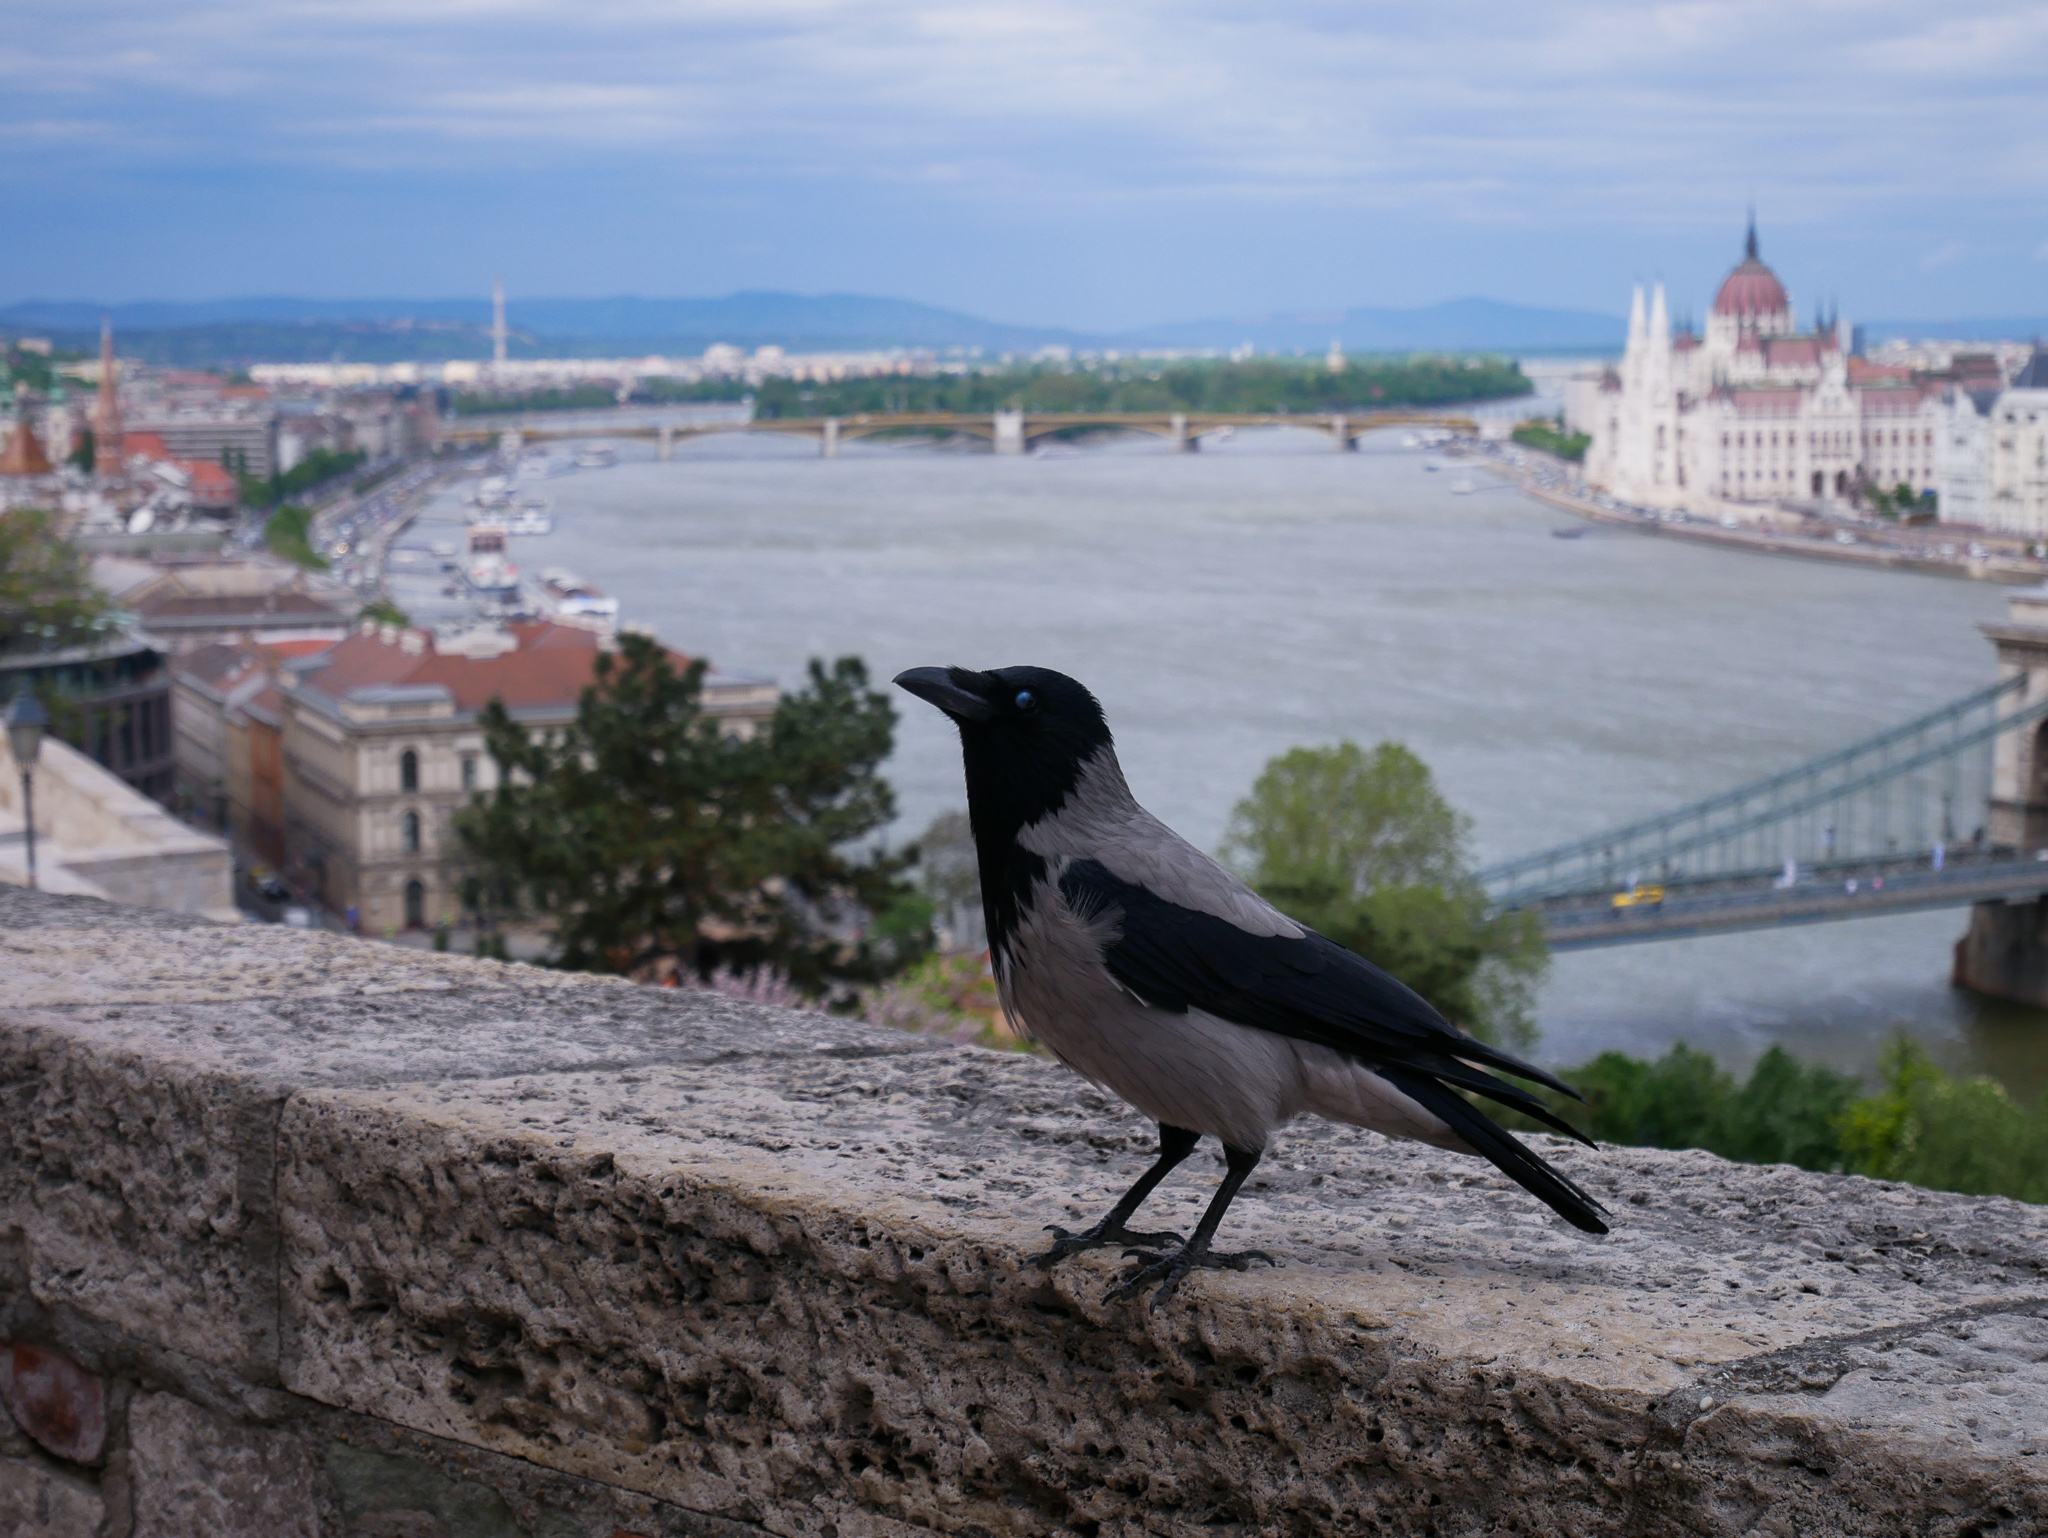 Utsikt från Budaslottet. Hängde lite med den lokala slottskråkan, han berättade att de flesta turister är ganska störande.